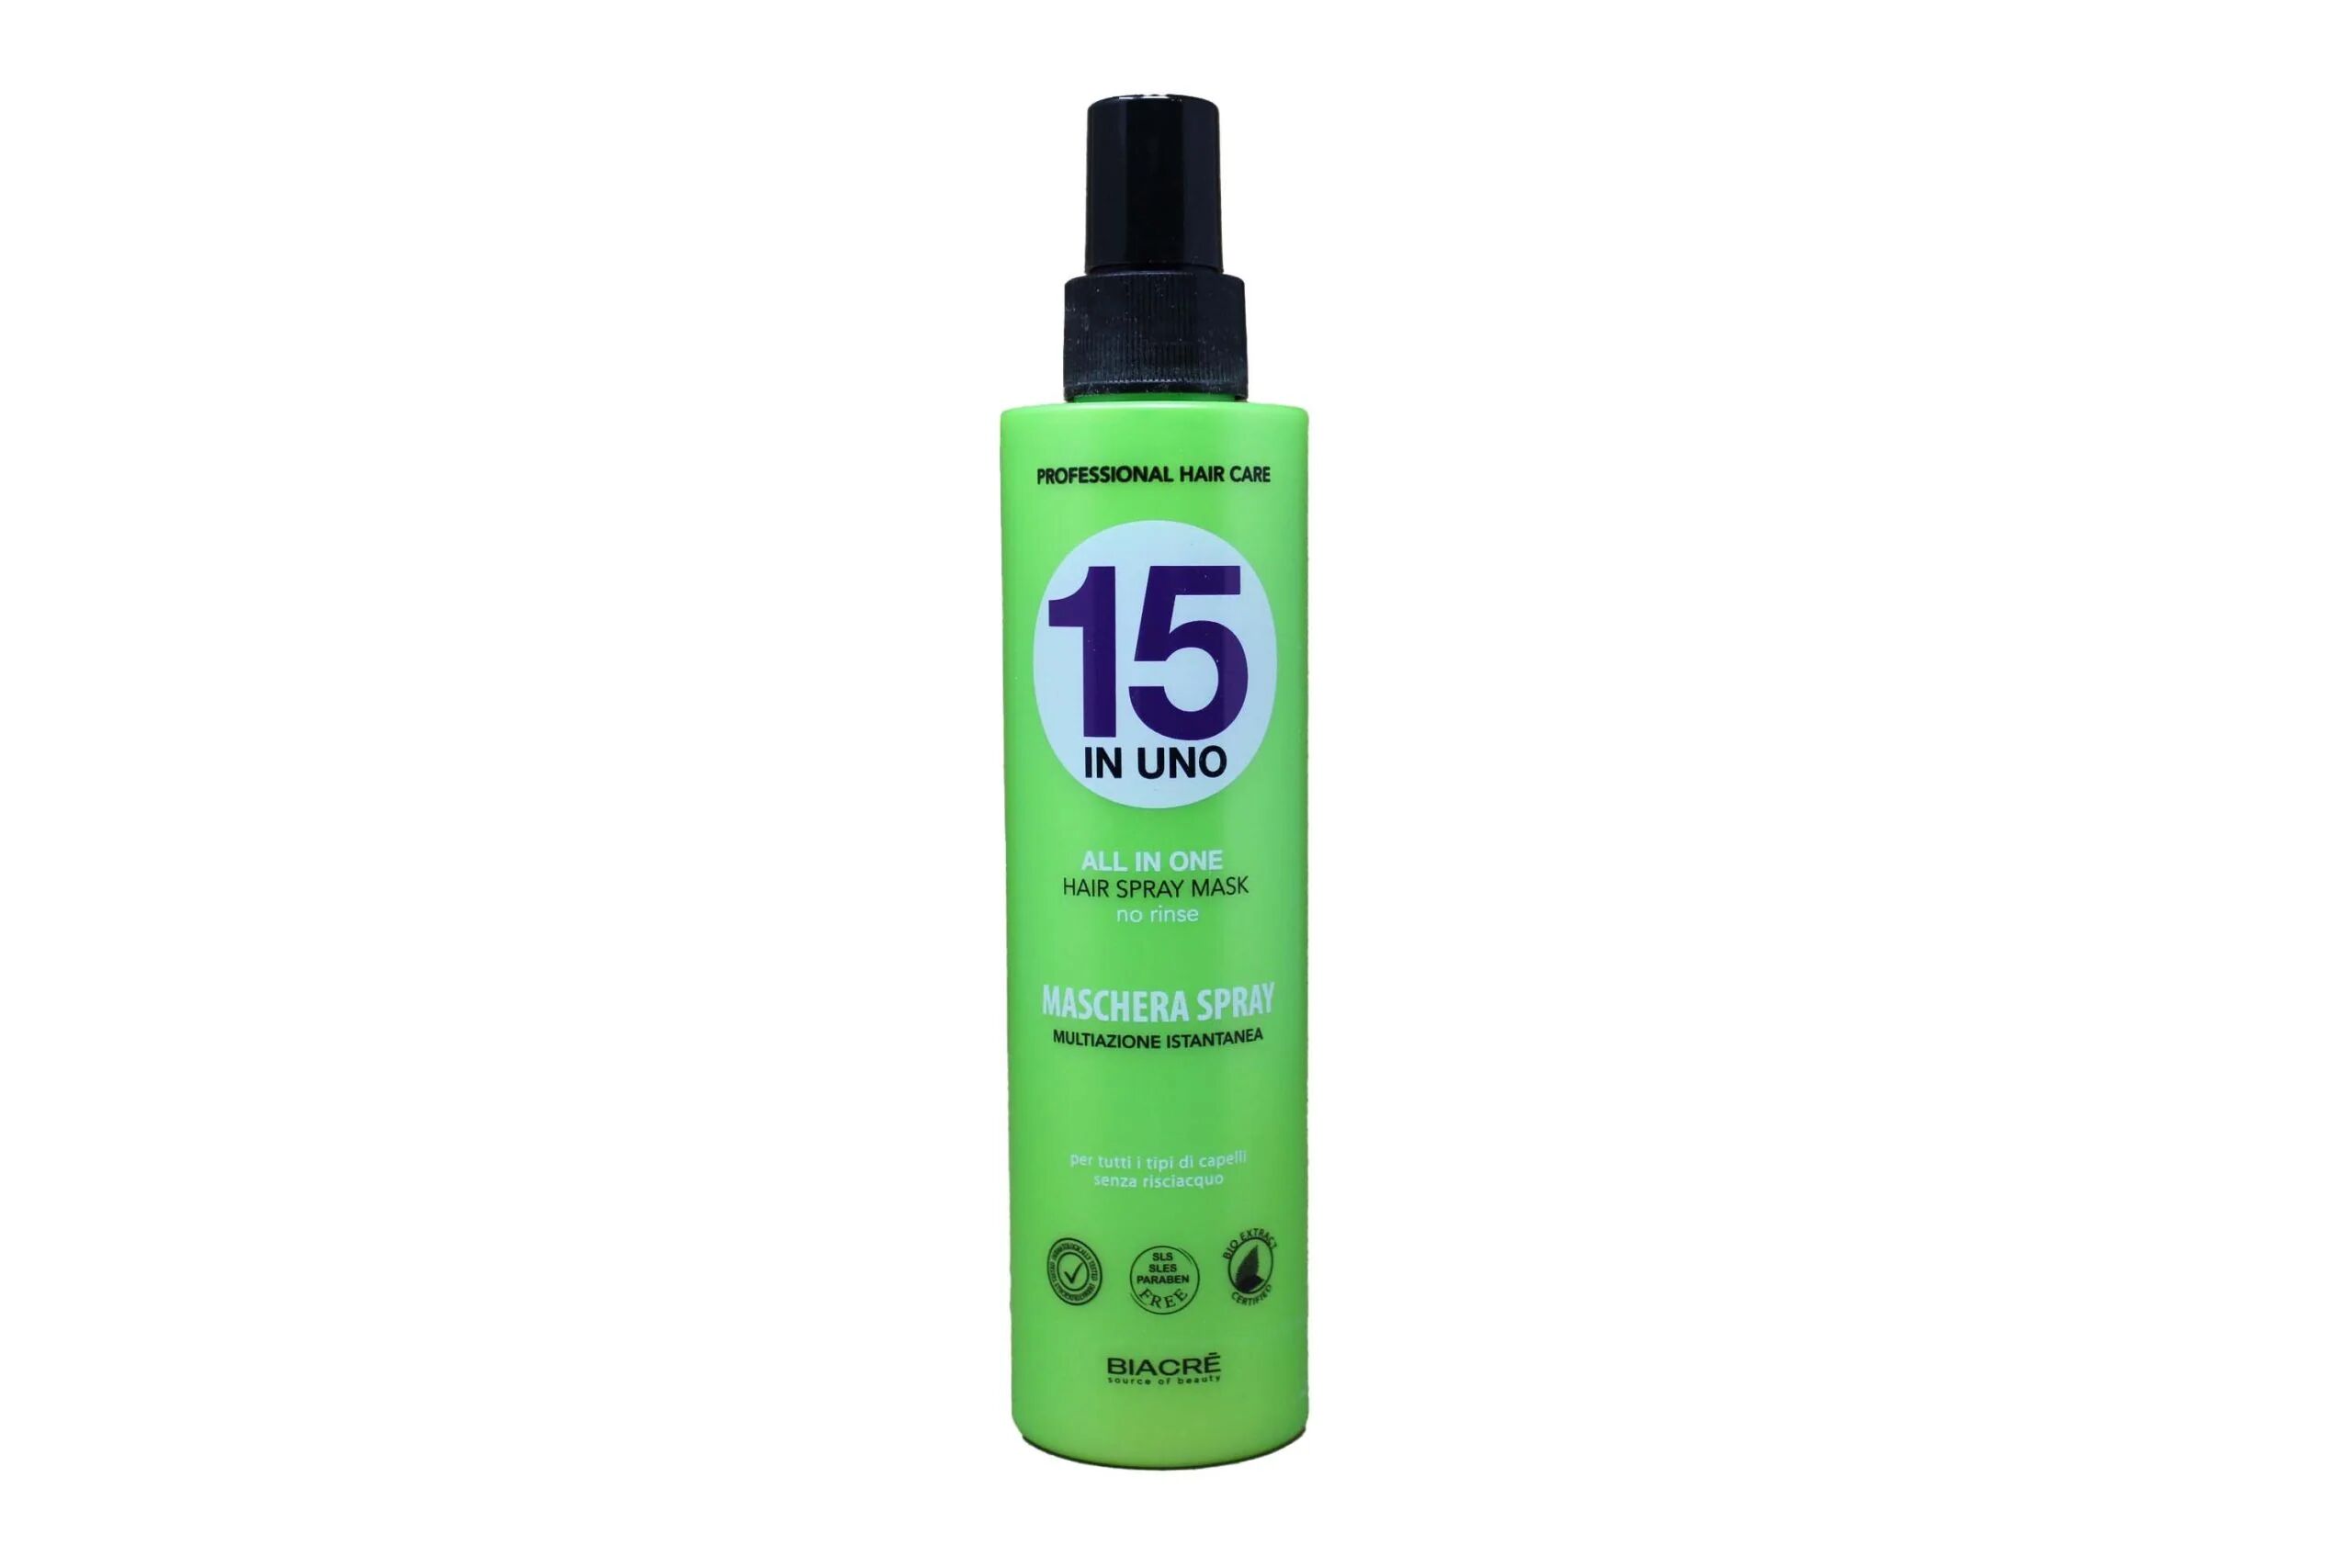 biacrè maschera spray multiazione istantanea15 in uno per tutti i tipi di capelli 200 ml